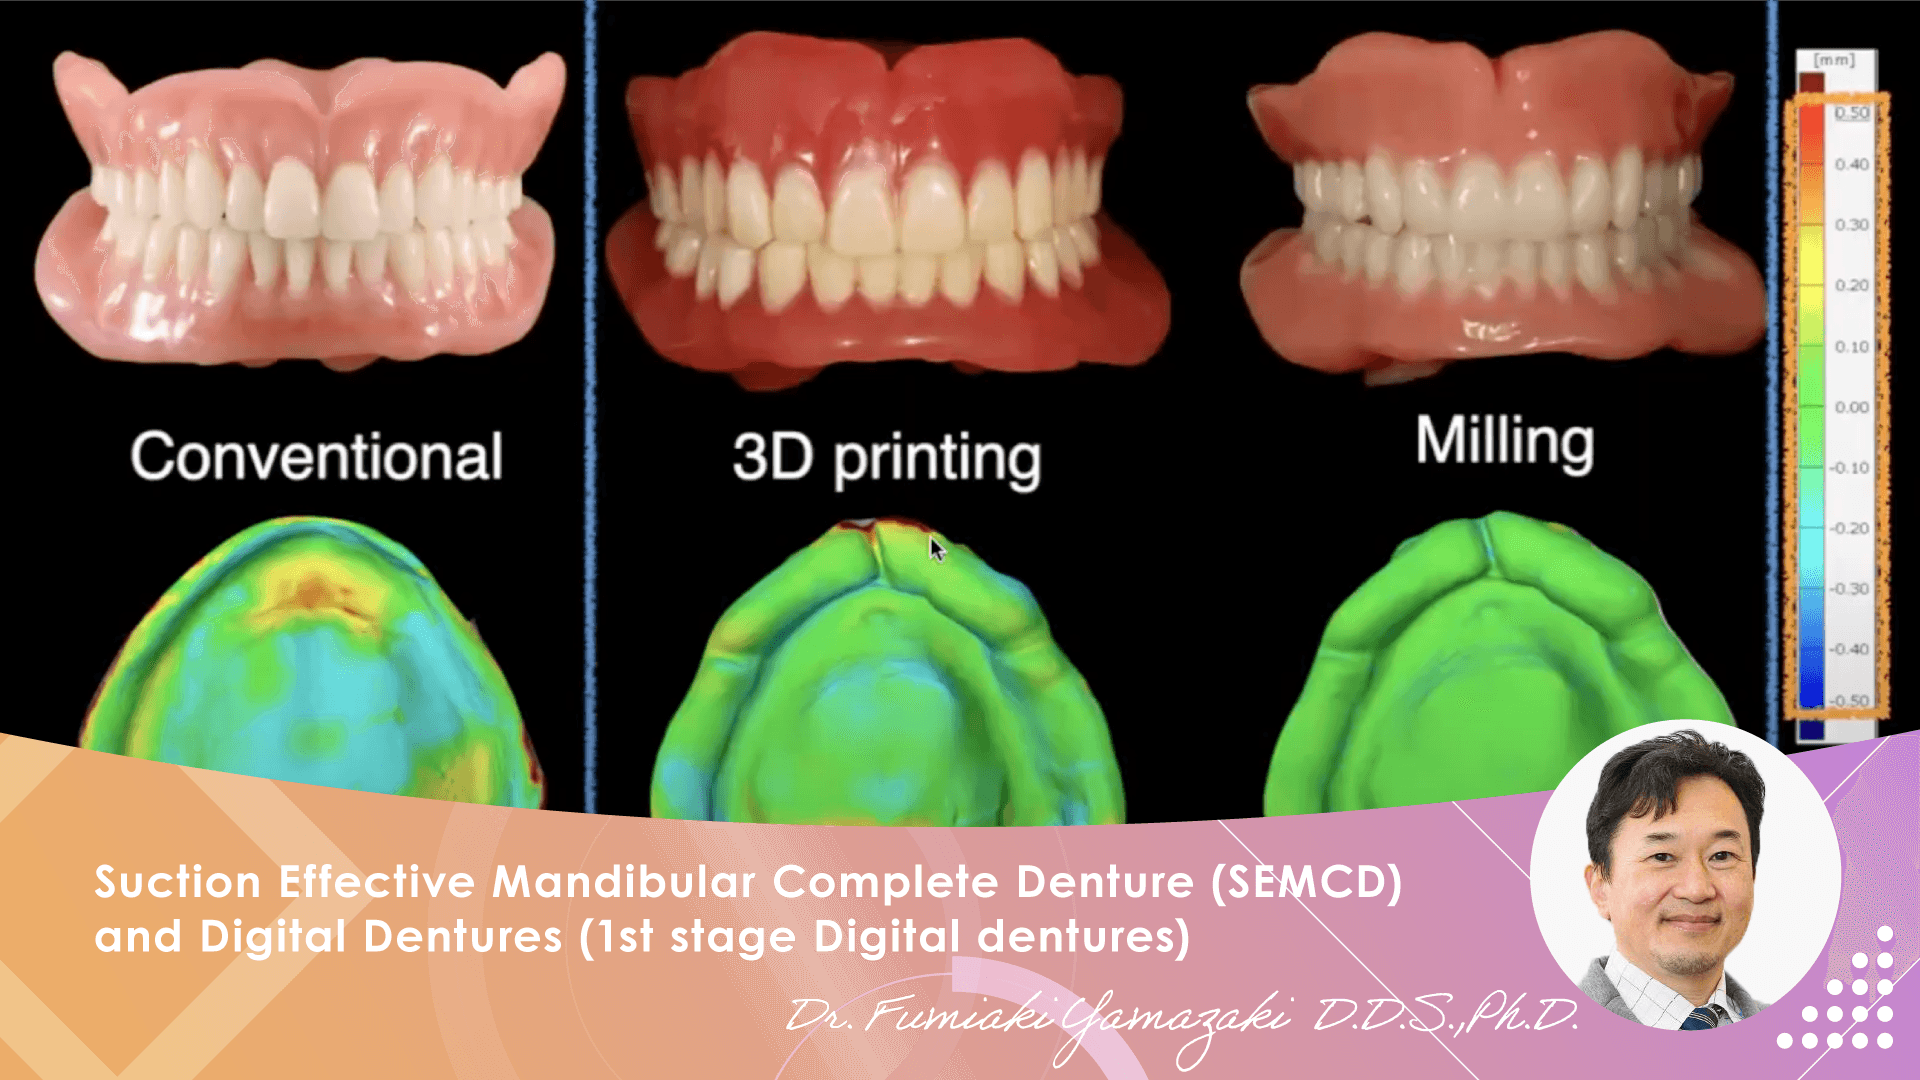 Suction Effective Mandibular Complete Denture (SEMCD) and Digital Dentures (1st stage Digital dentures)